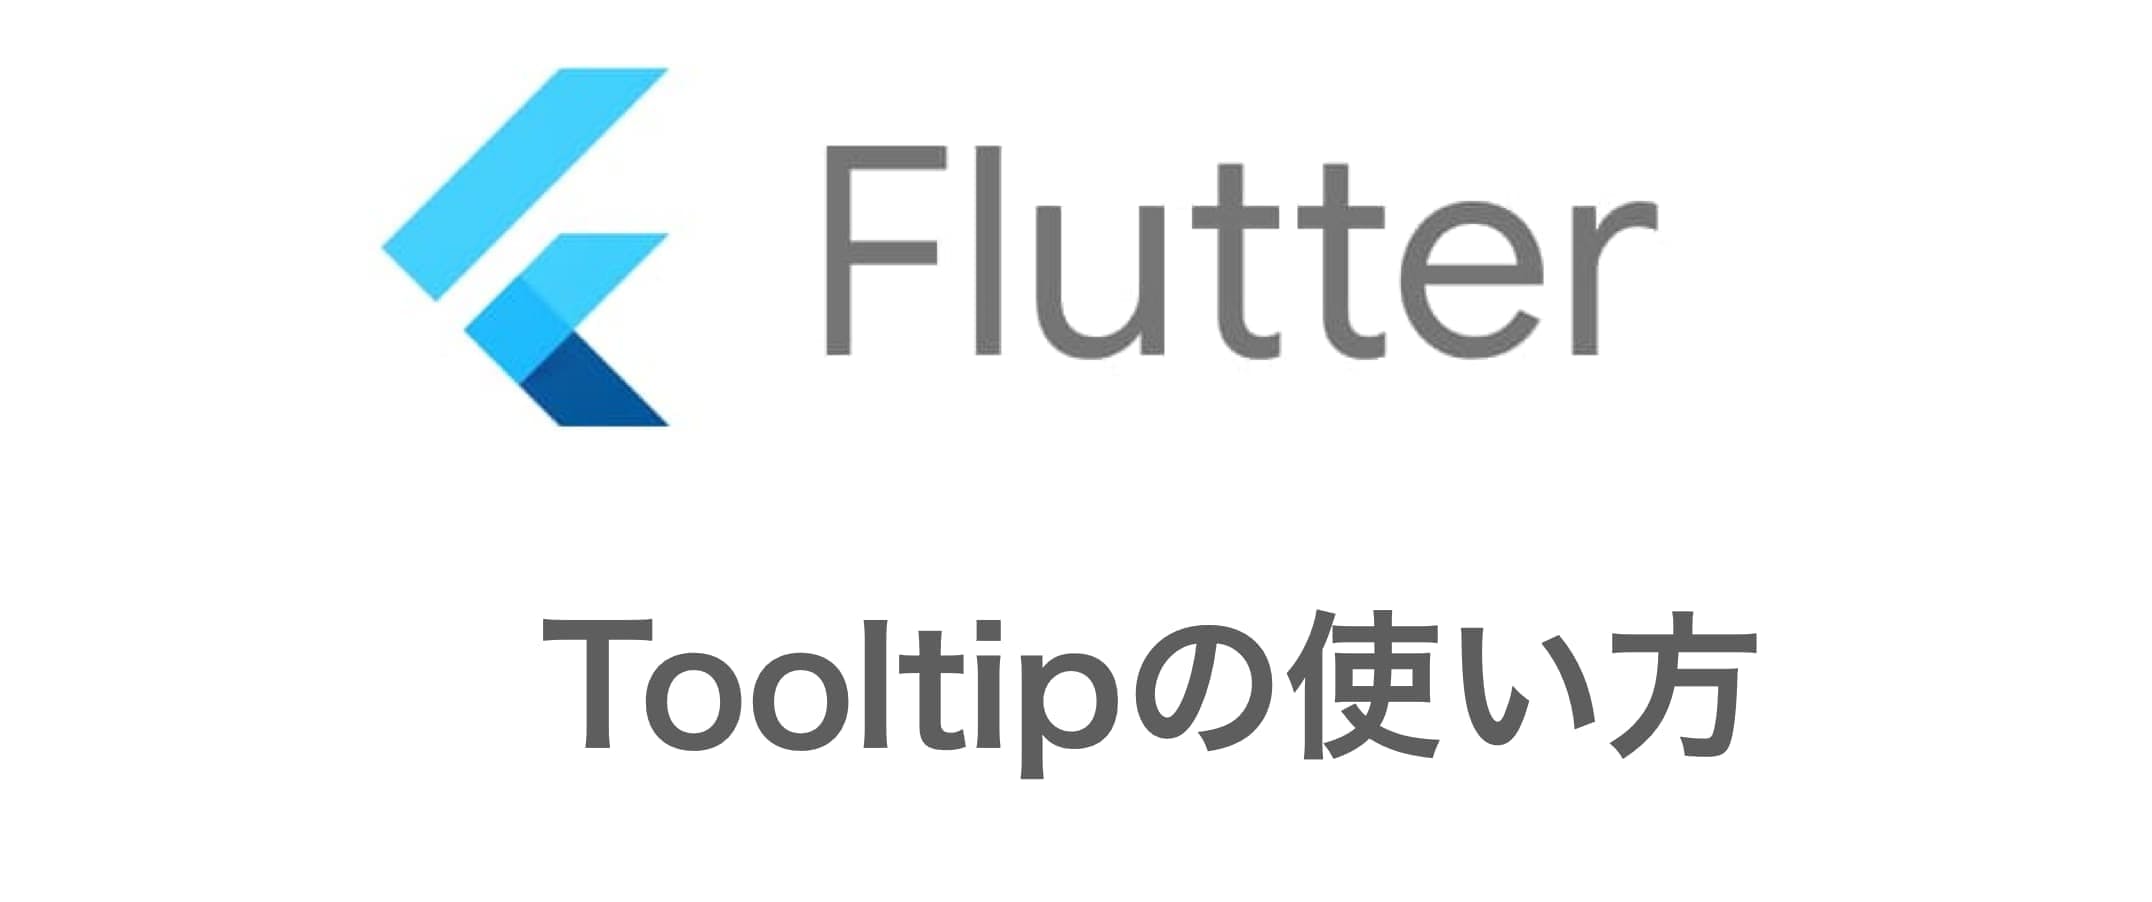 Flutterでのtooltipの使い方